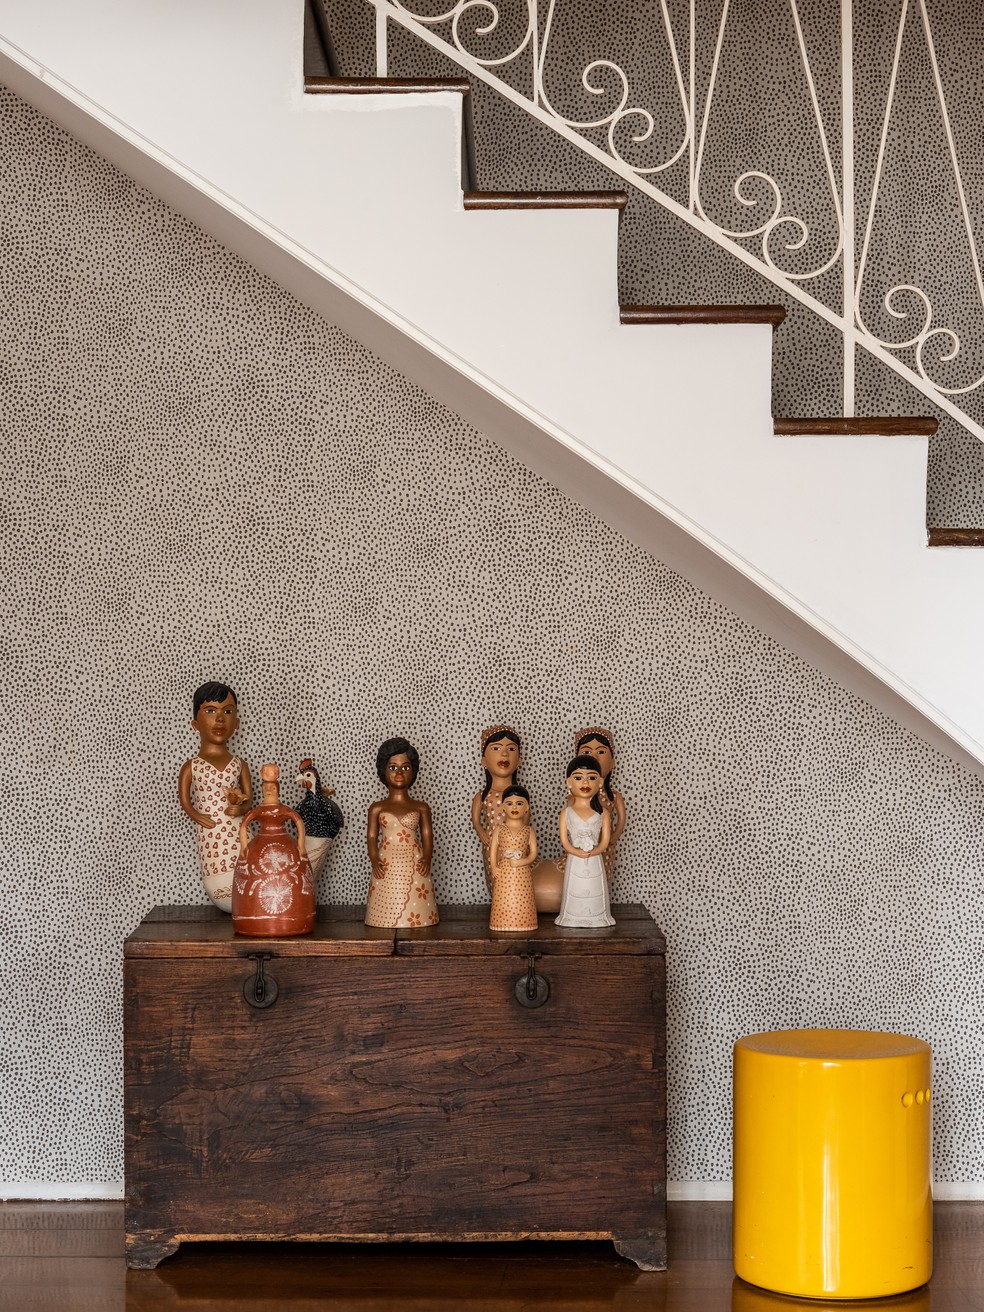 Bonecas do Vale do Jequitinhonha enfeitam o apartamento de Mõnica Martelli — Foto: Wesley Diego Emes/Divulgação